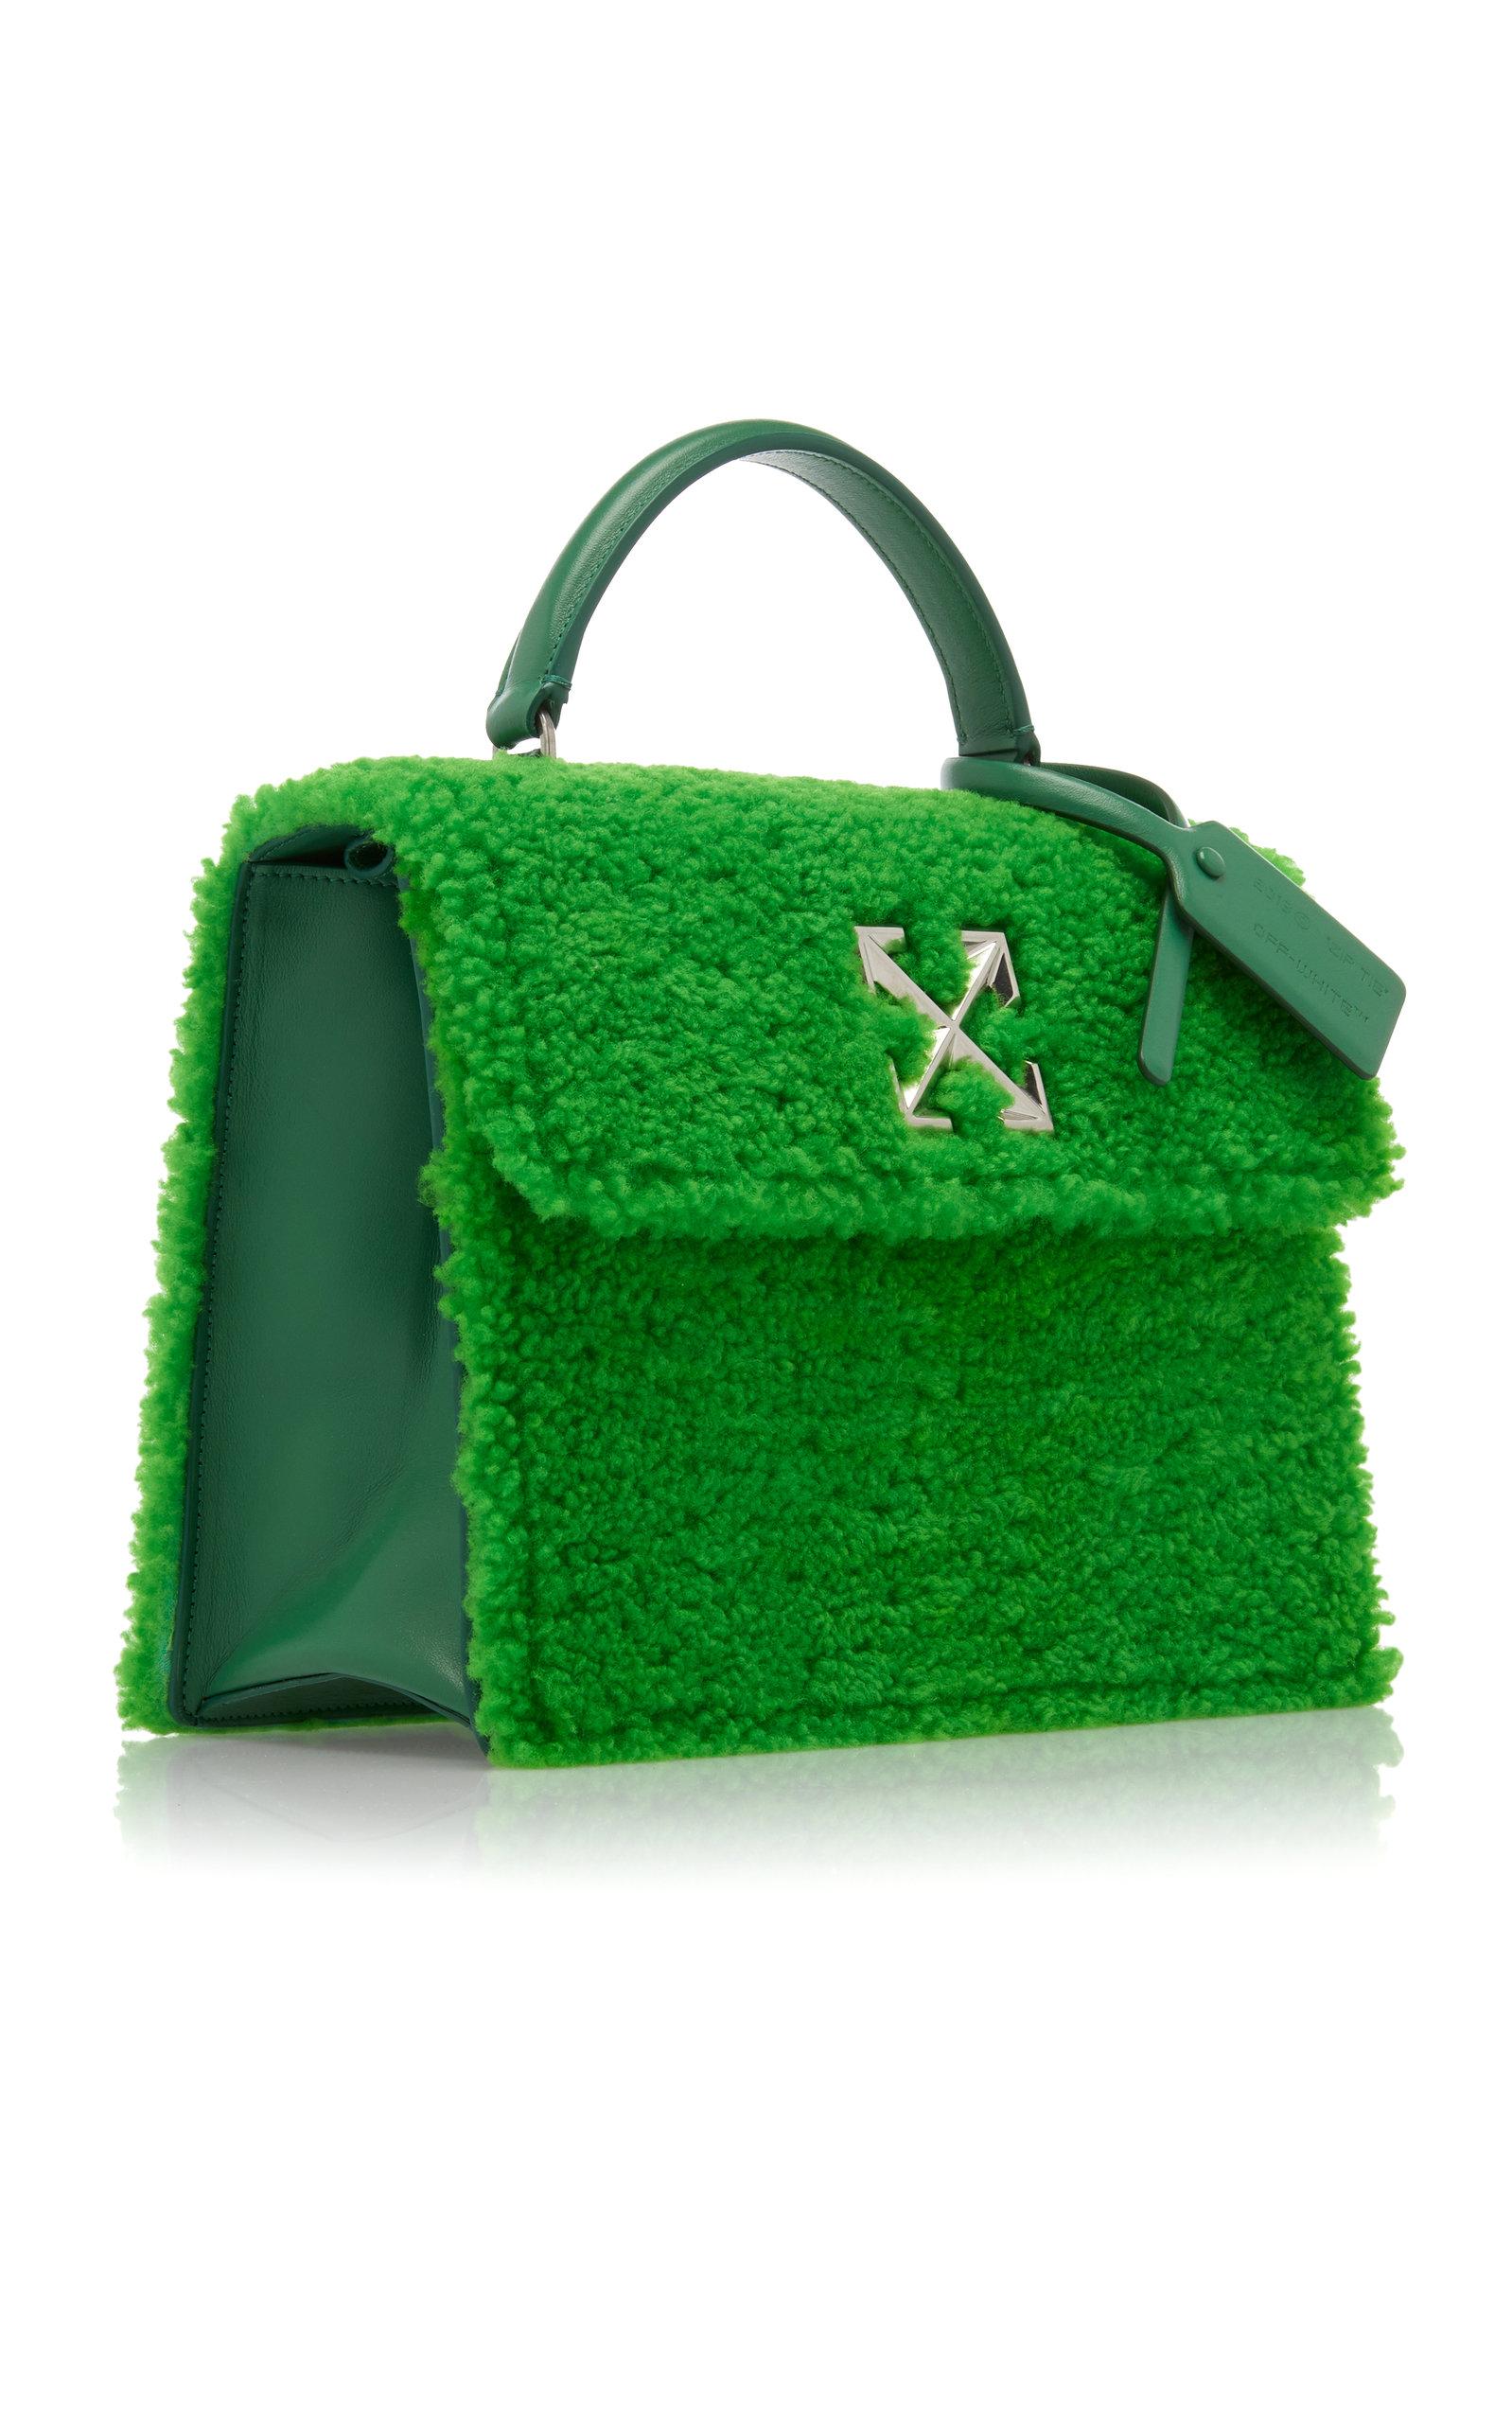 10 trendy purses for winter: Reco, Rebecca Minkoff, Aldo and more